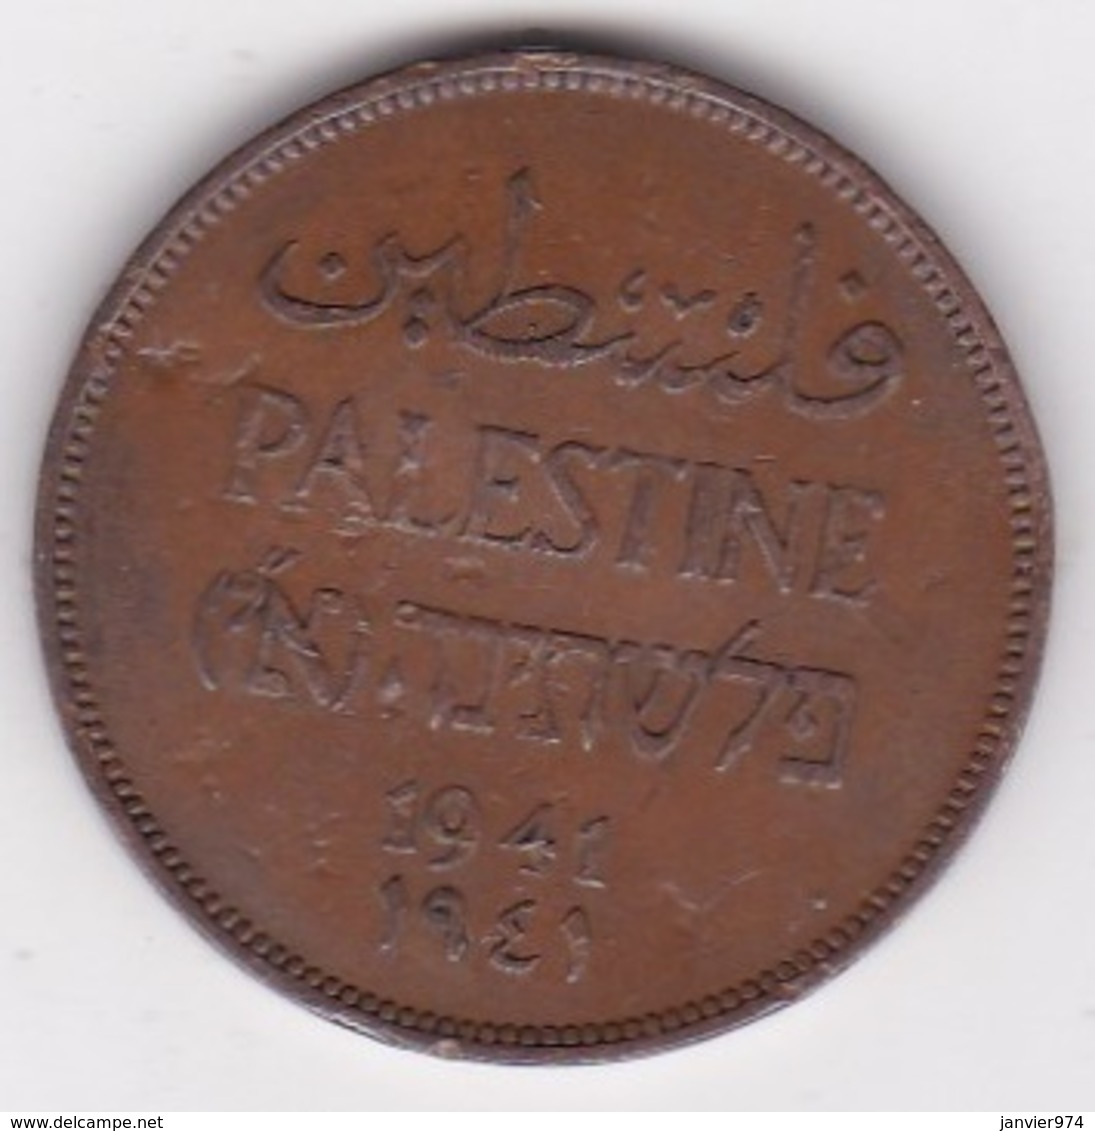 PALESTINE . 2 MILS 1941 .BRONZE - Israël